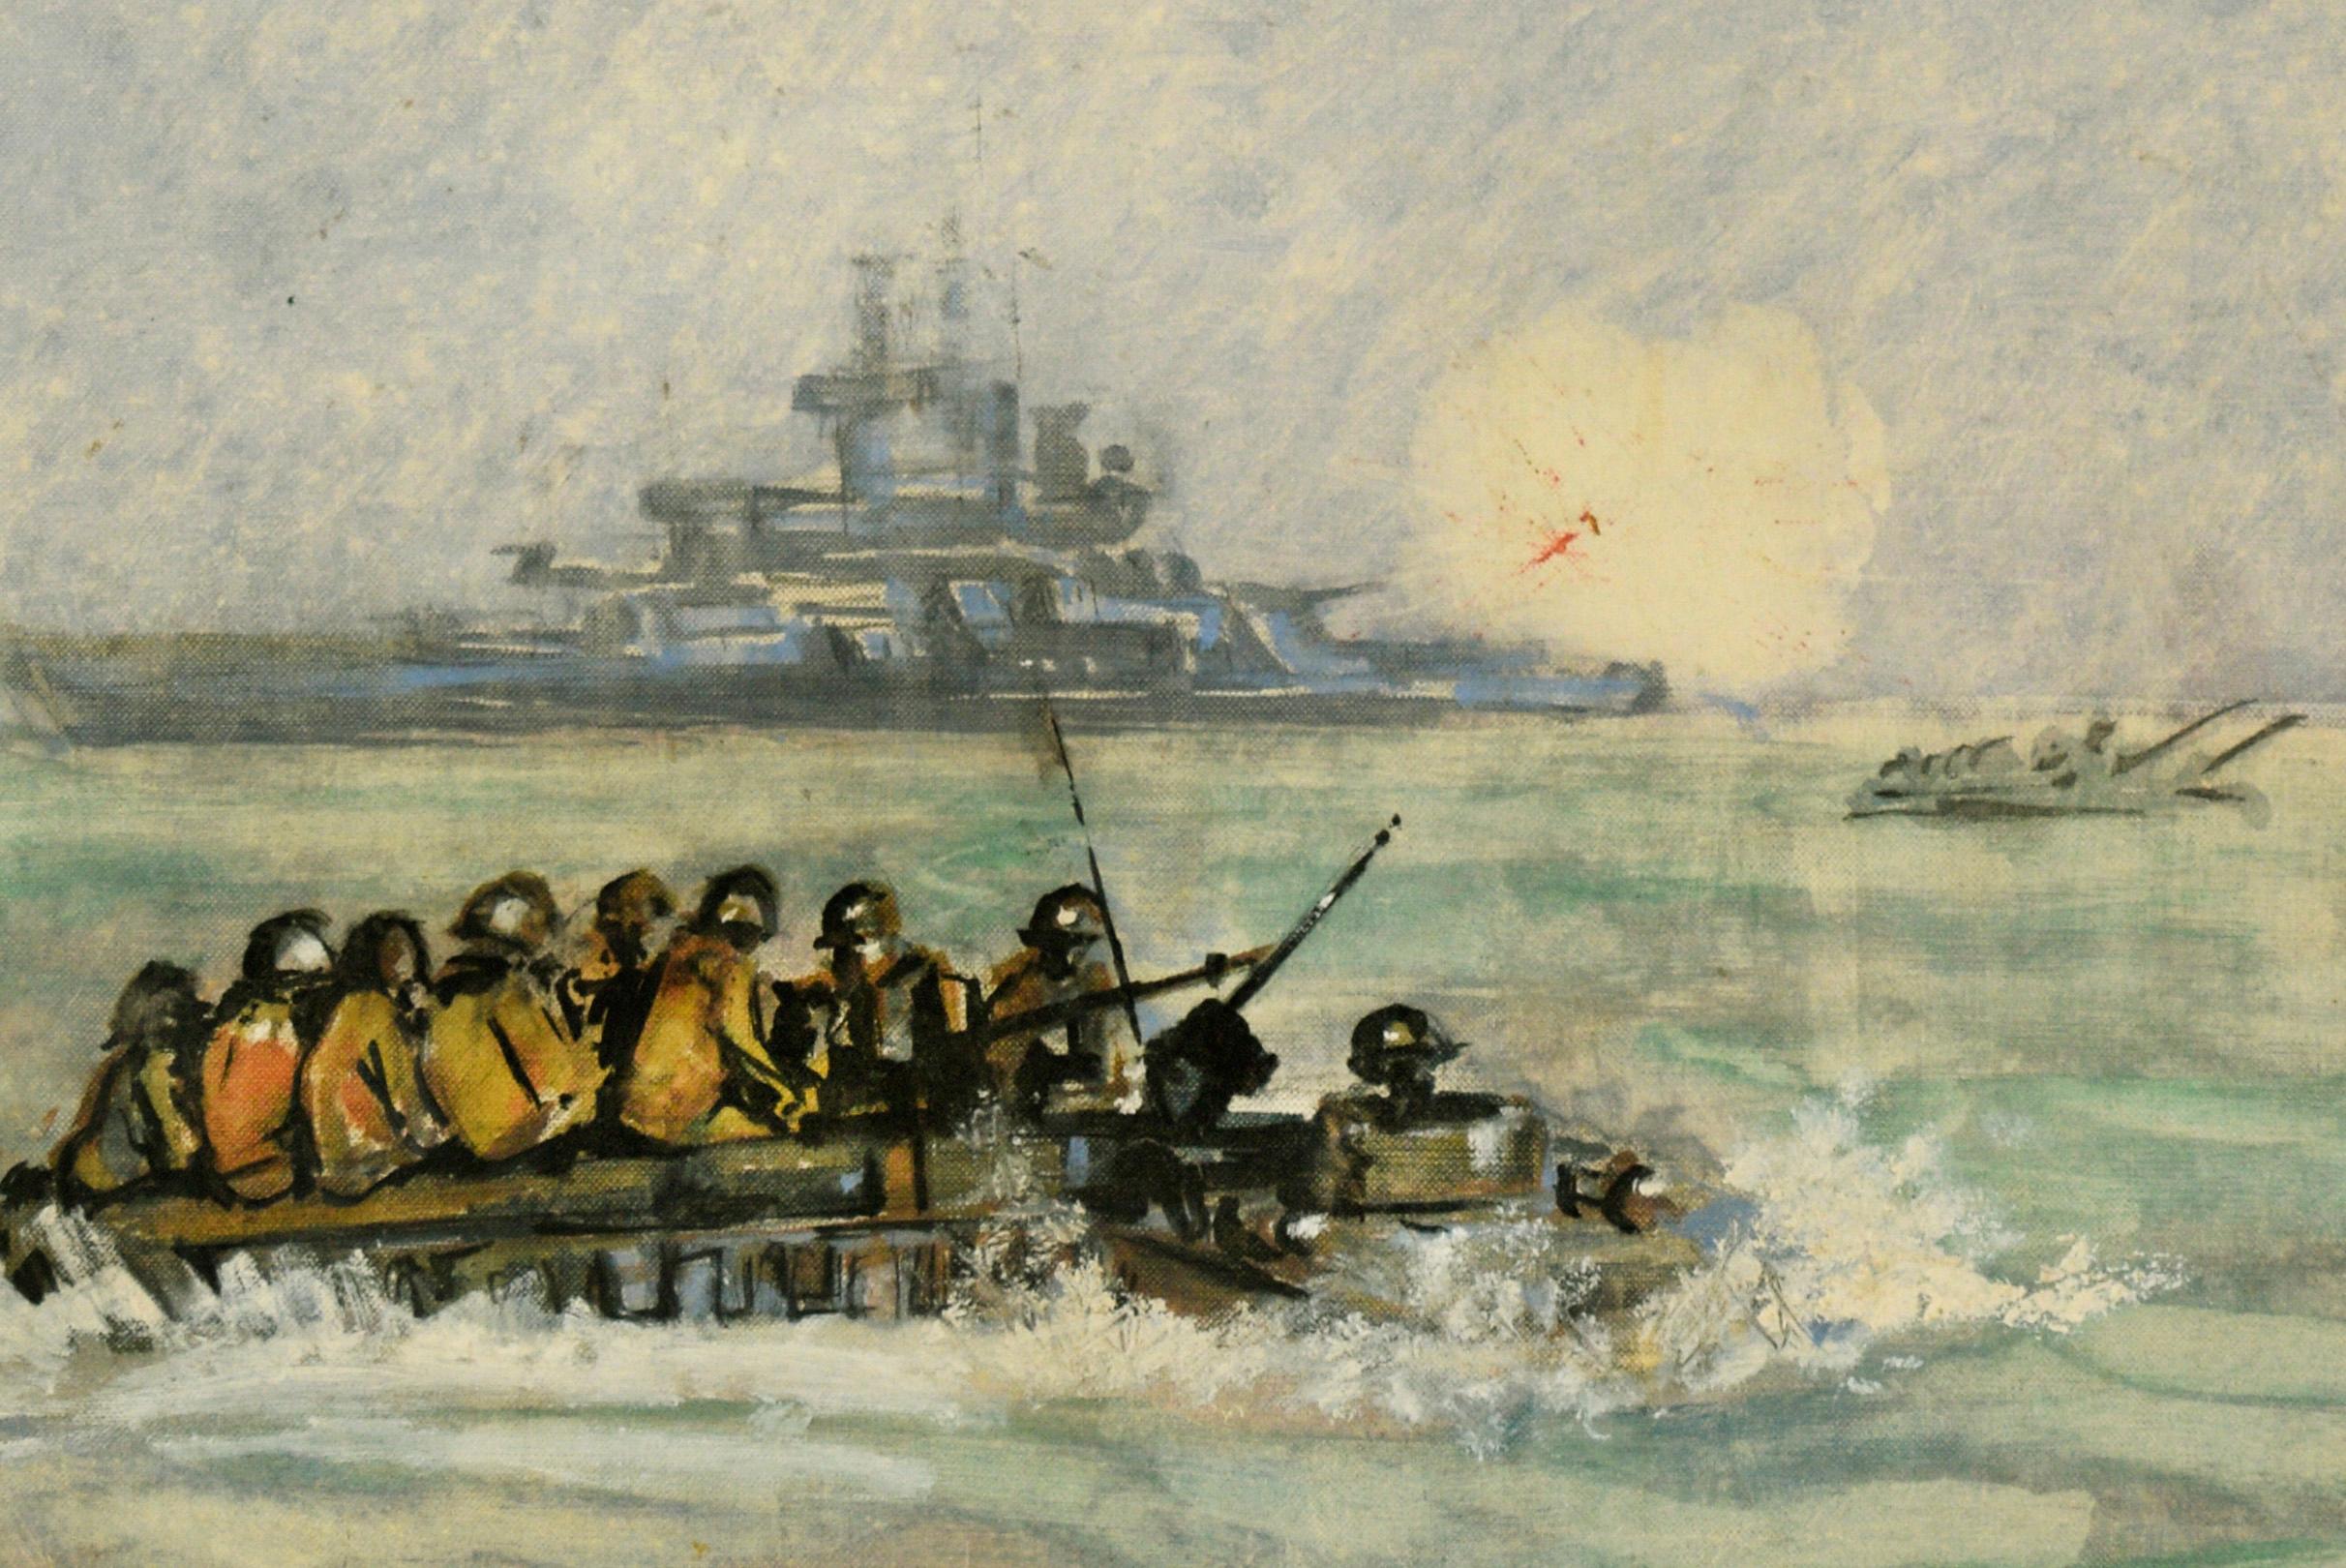 Soldats américains débarquant sur des bateaux avec des navires de guerre tirant au loin - Impressionnisme Painting par Linna Annetta Fogle Crow